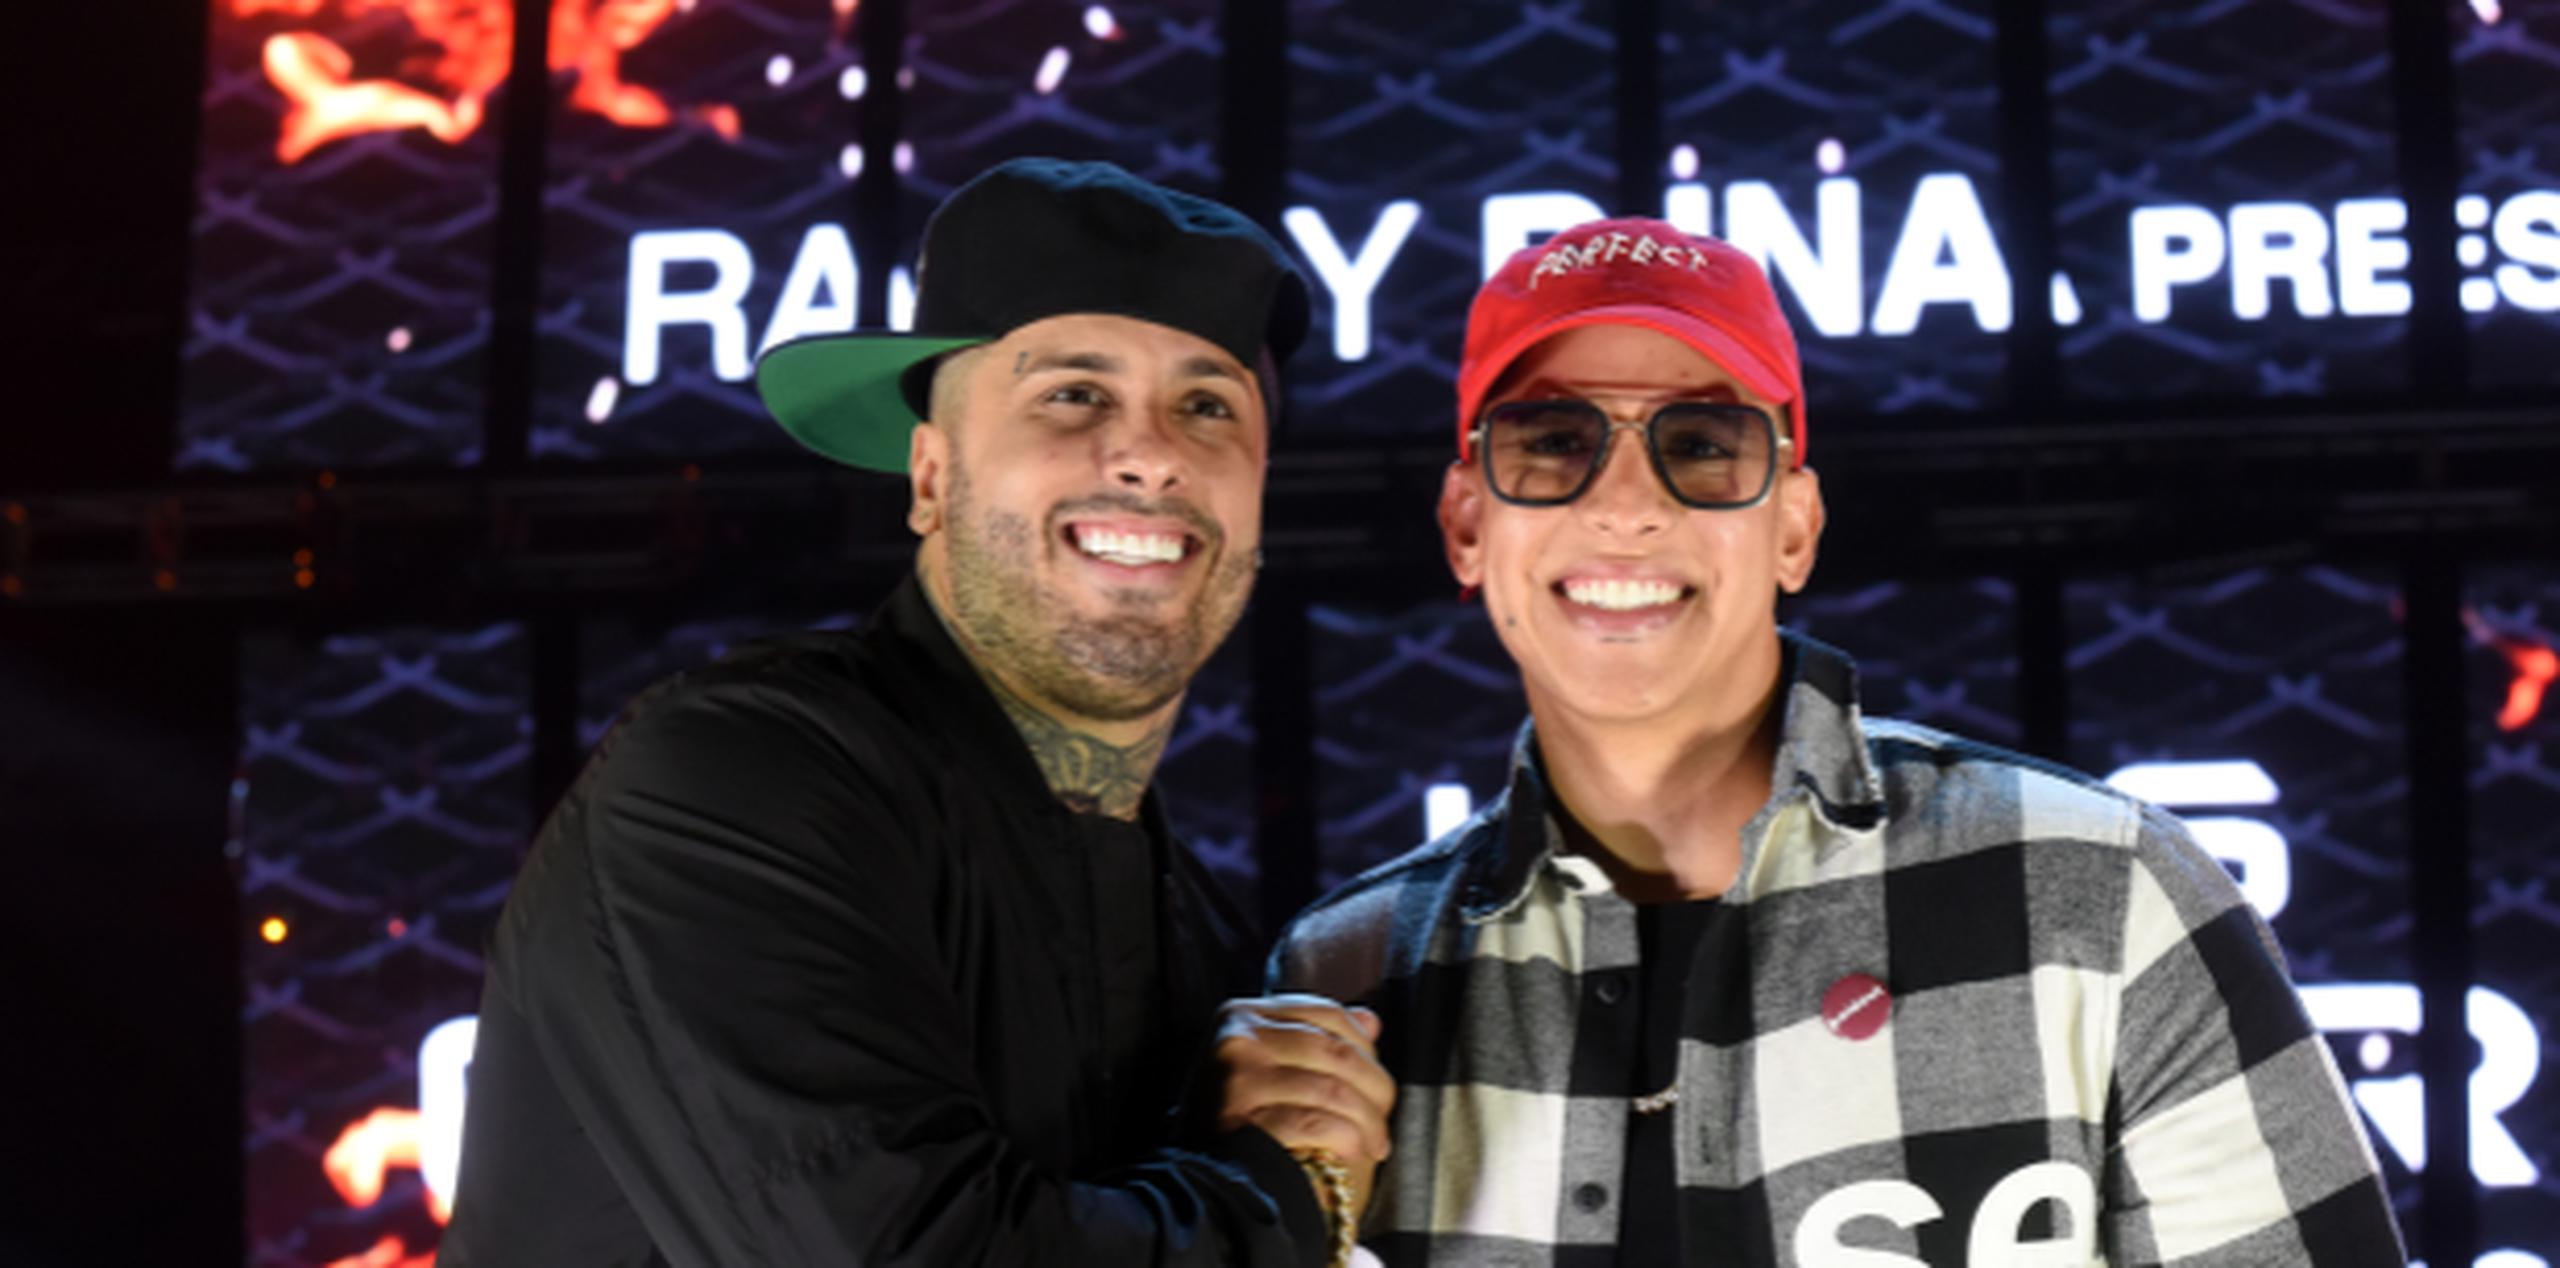 La producción busca jóvenes parecidos a Nicky Jam y Daddy Yankee. (Archivo)